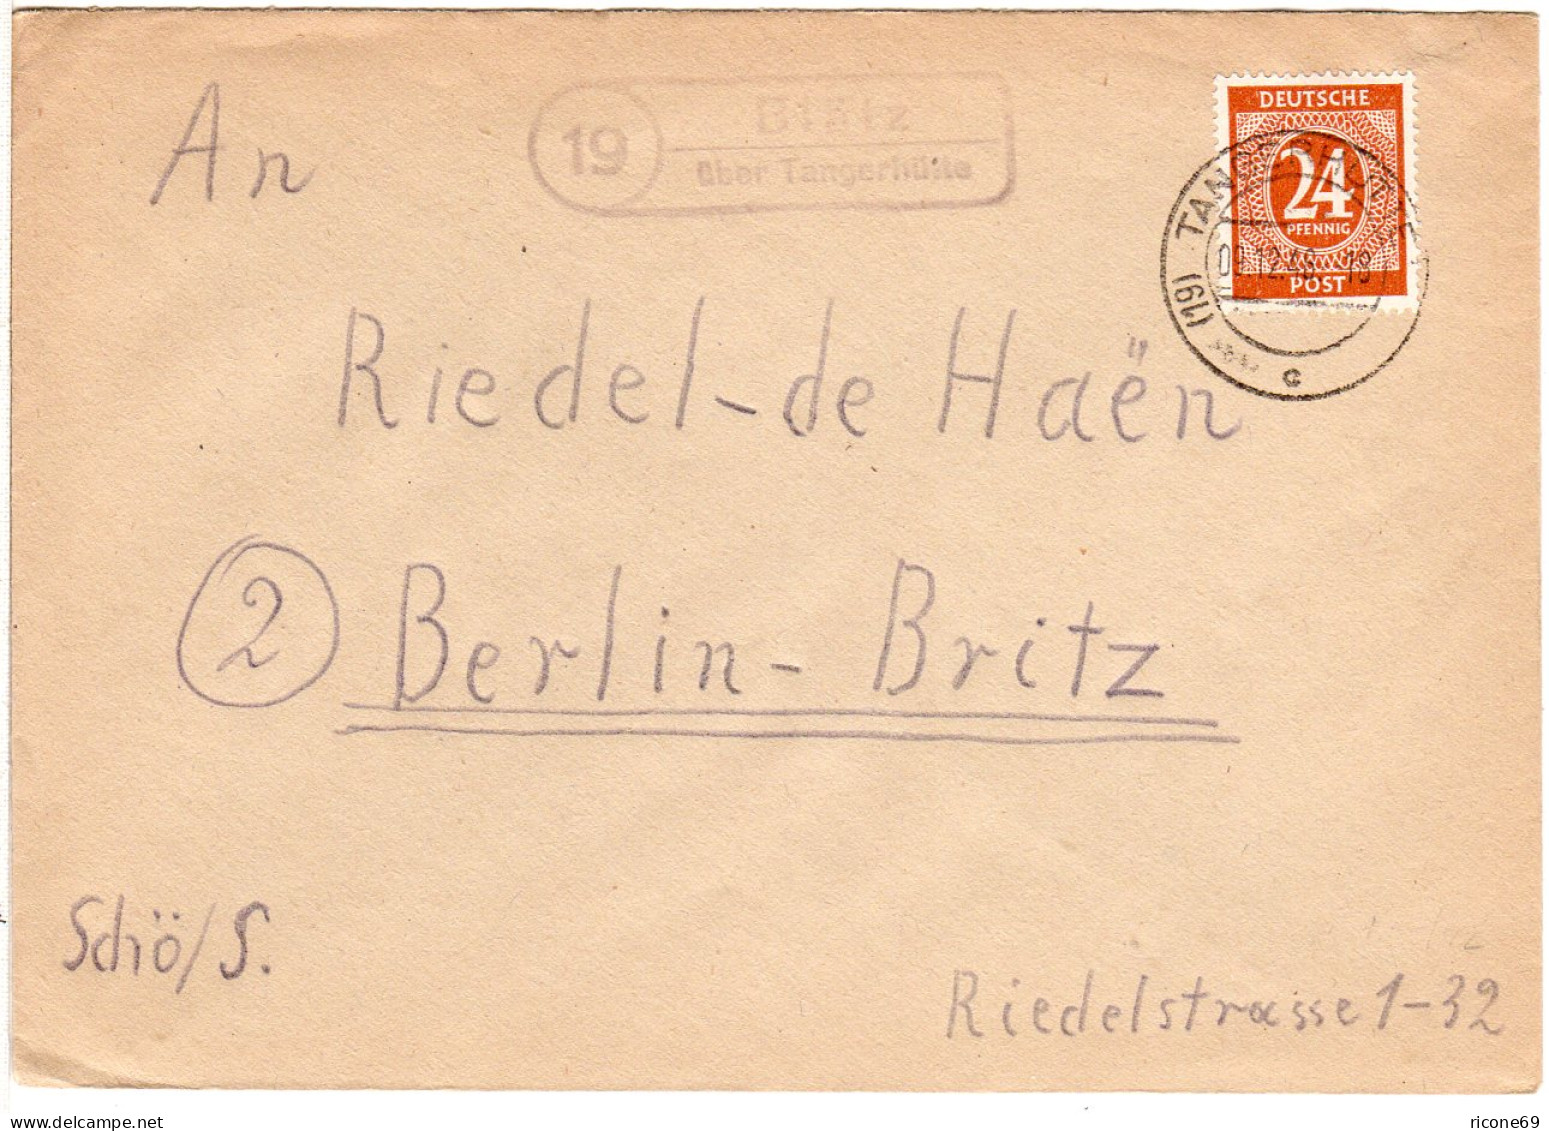 1948, Landpost Stpl. 19 BLÄTZ über Tangerhütte Auf Brief M. 24 Pf.  - Briefe U. Dokumente